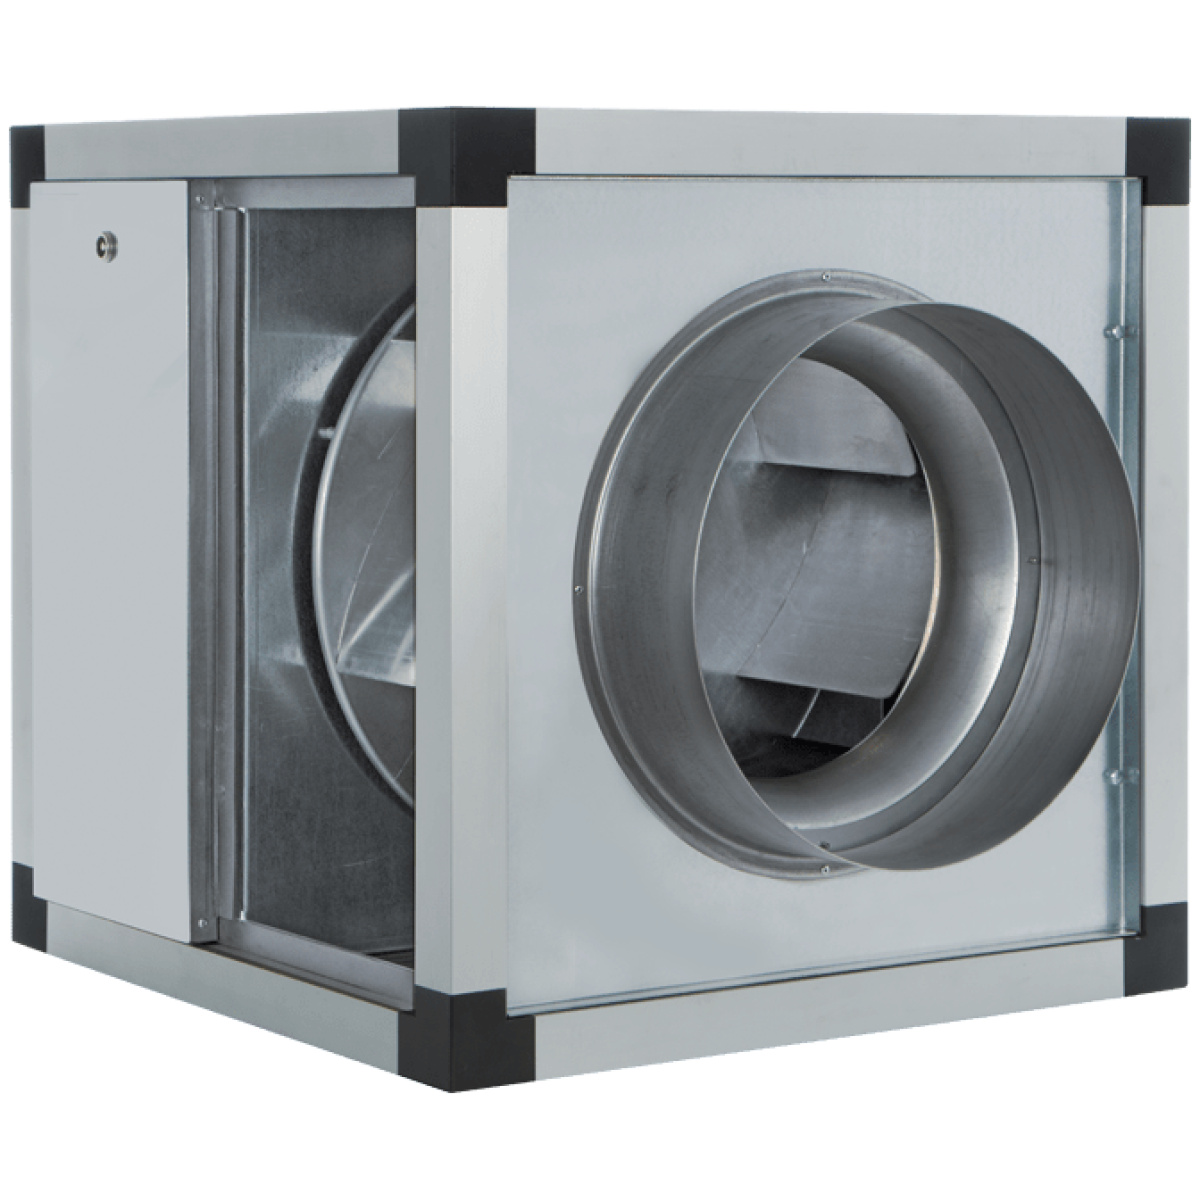 Wentylator kuchenny 120°C izolowany akustycznie o średnicy nominalnej 500 mm 9000 m3/h - VORTICE VORT QBK-SAL KC T 500